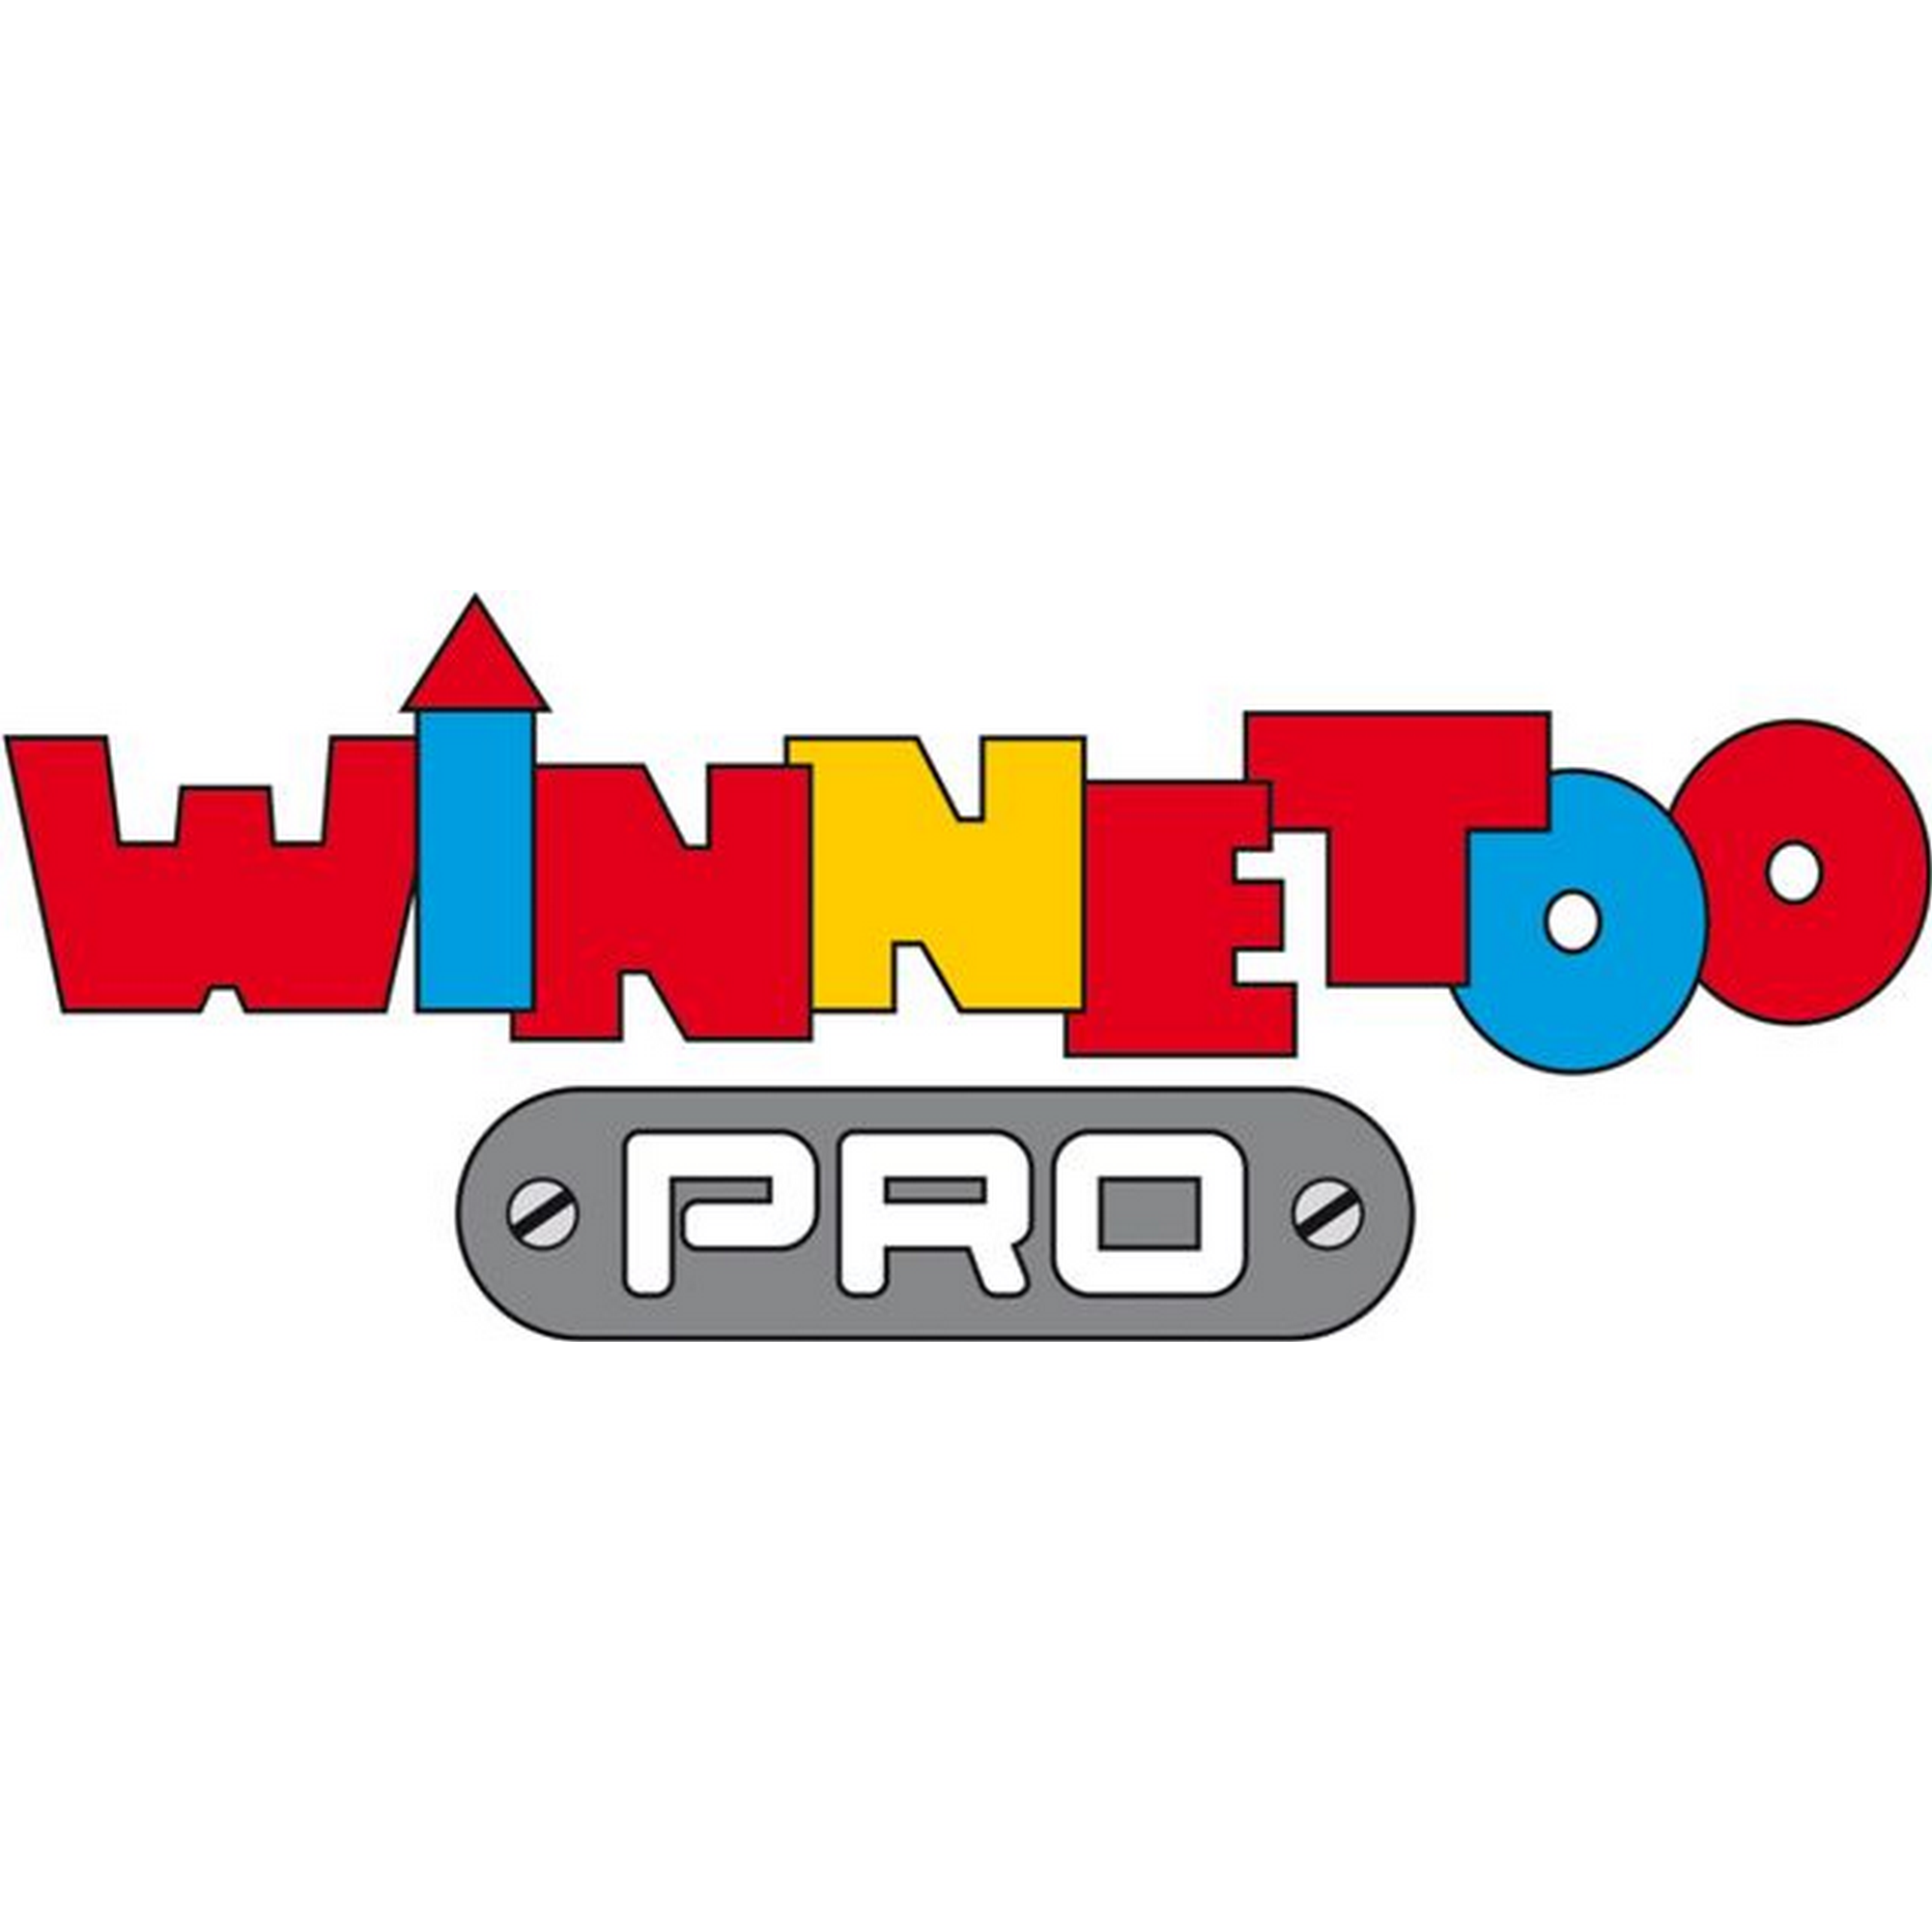 Klettersteg-Komplettset 'Winnetoo Pro' Nadelholz 209 x 71 x 4 cm + product picture